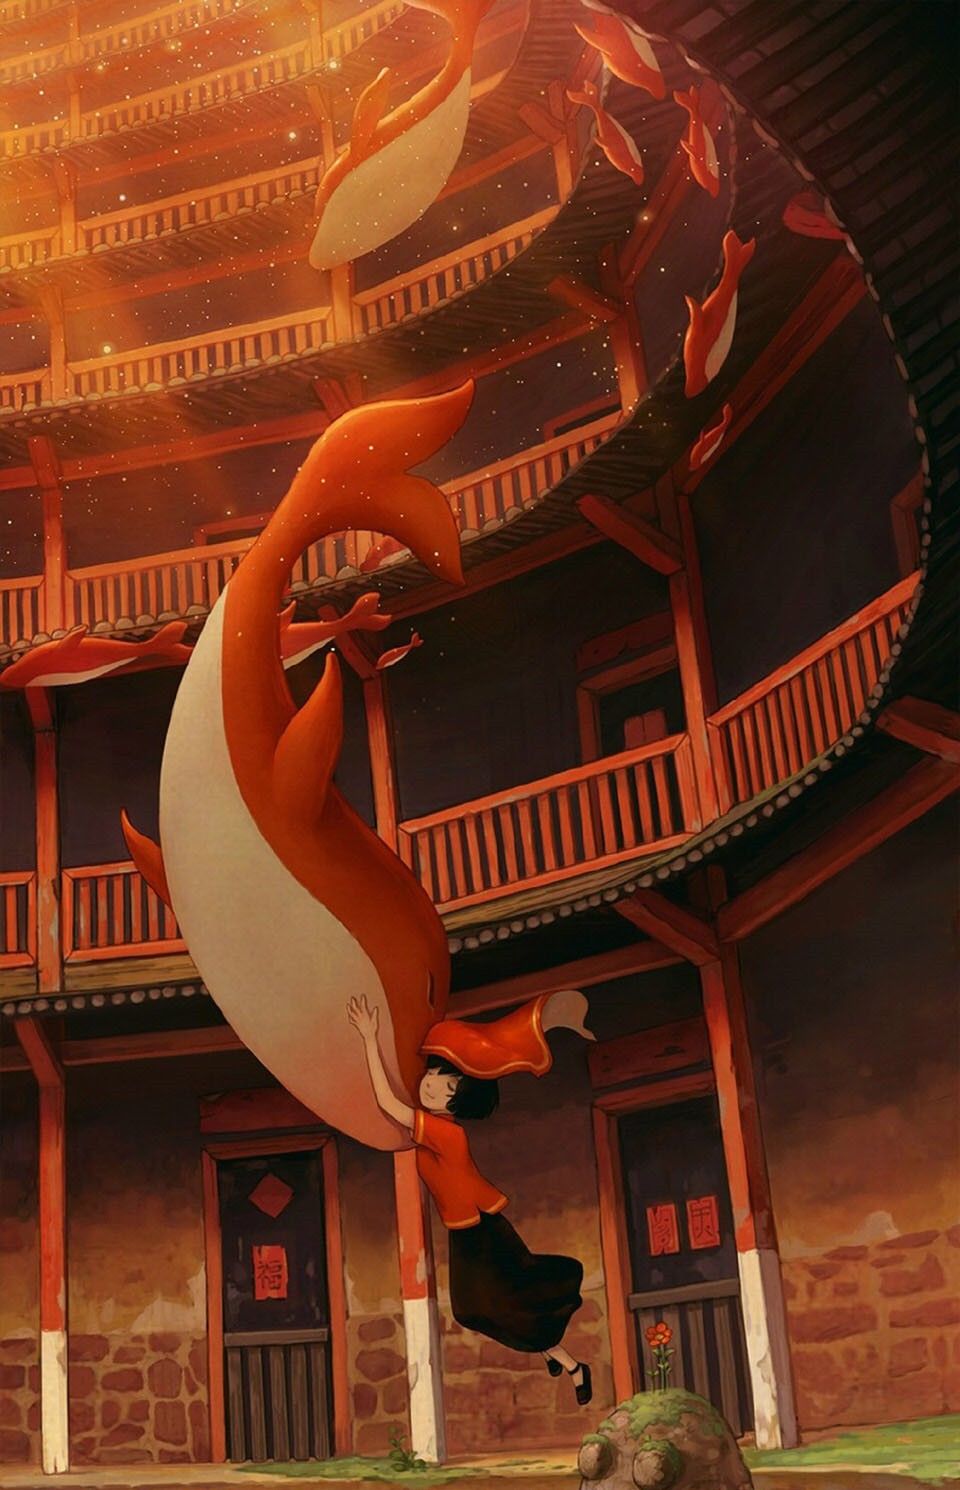 【资讯】国产动画电影《大鱼海棠》将在韩国上映 海报公开